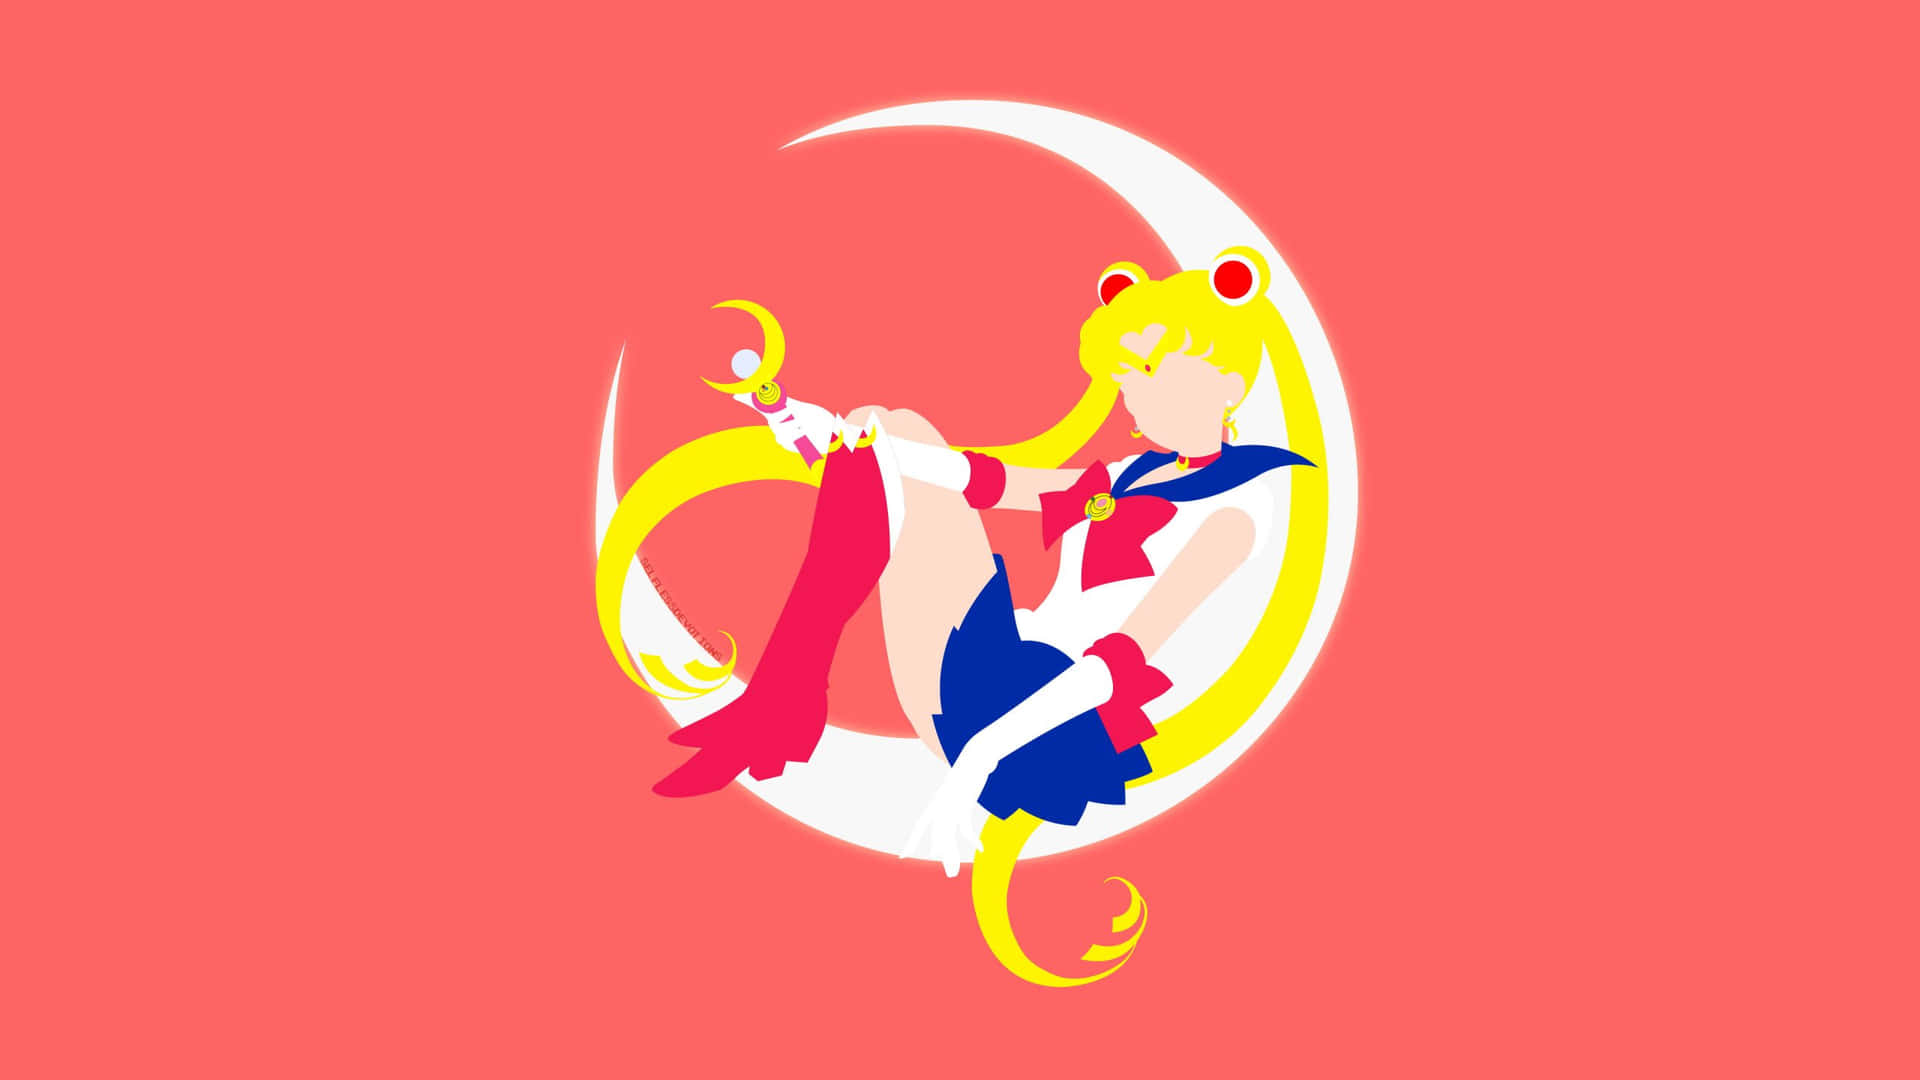 Umatransformação Poderosa - Sailor Moon